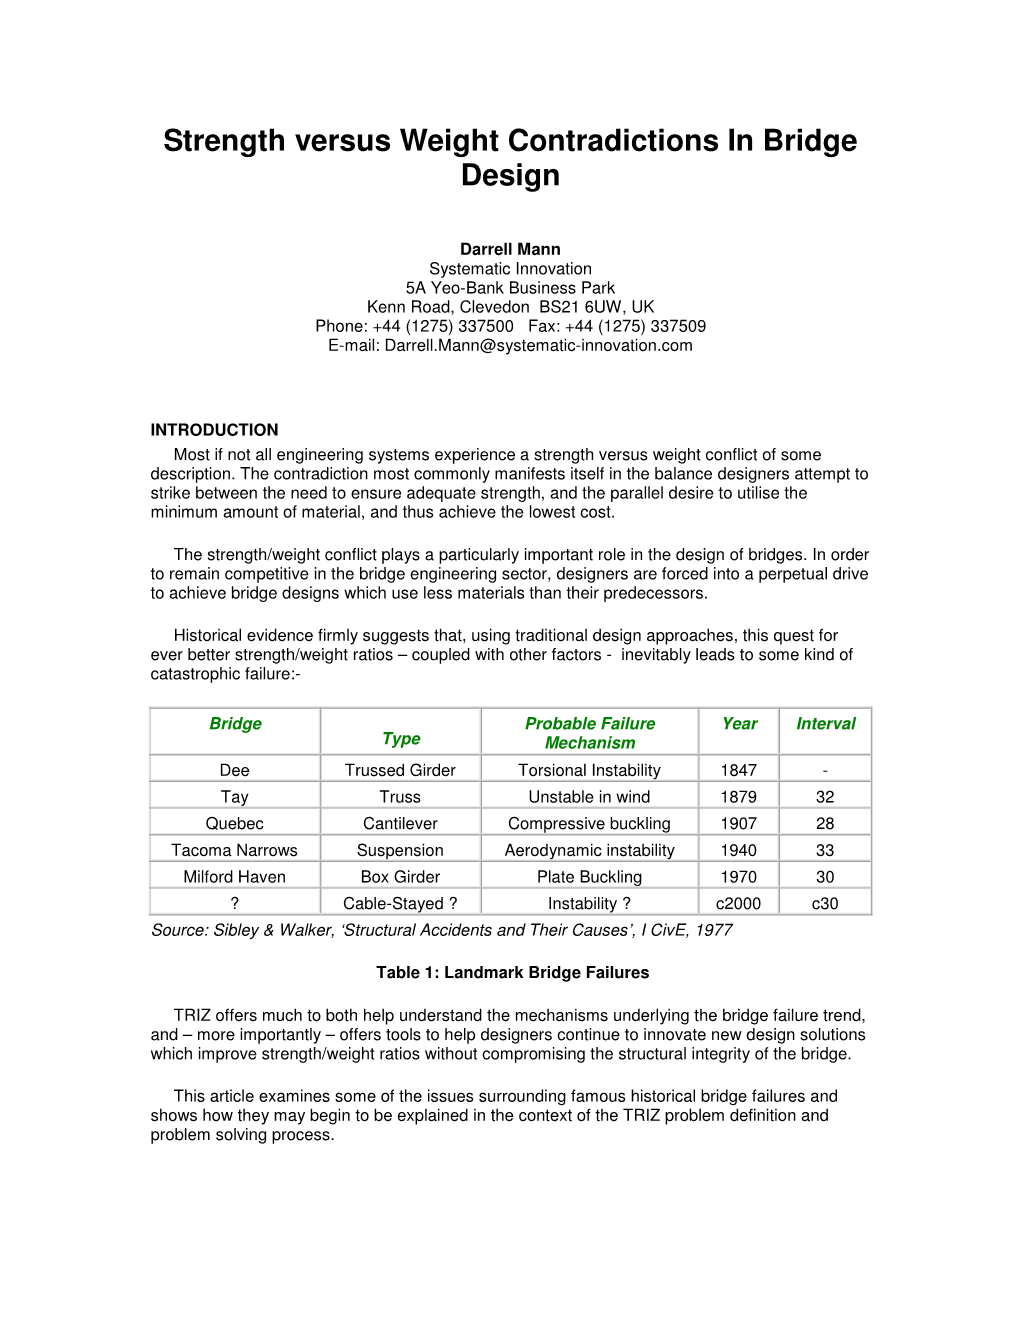 Strength Versus Weight Contradictions in Bridge Design